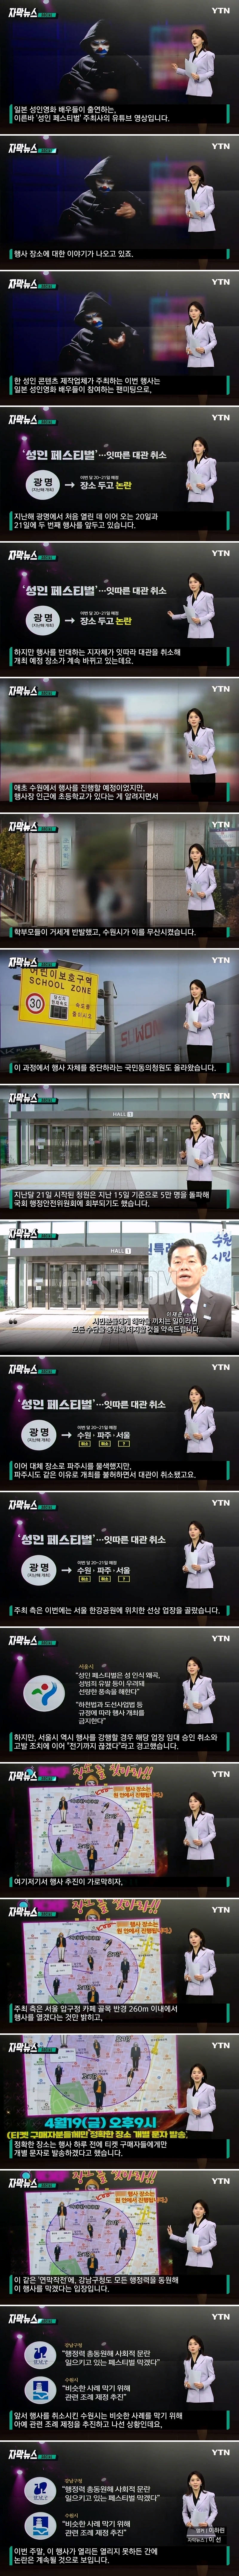 ',위장 전술', 예고에.폭탄 떨어진 강남구 결사반대.jpg